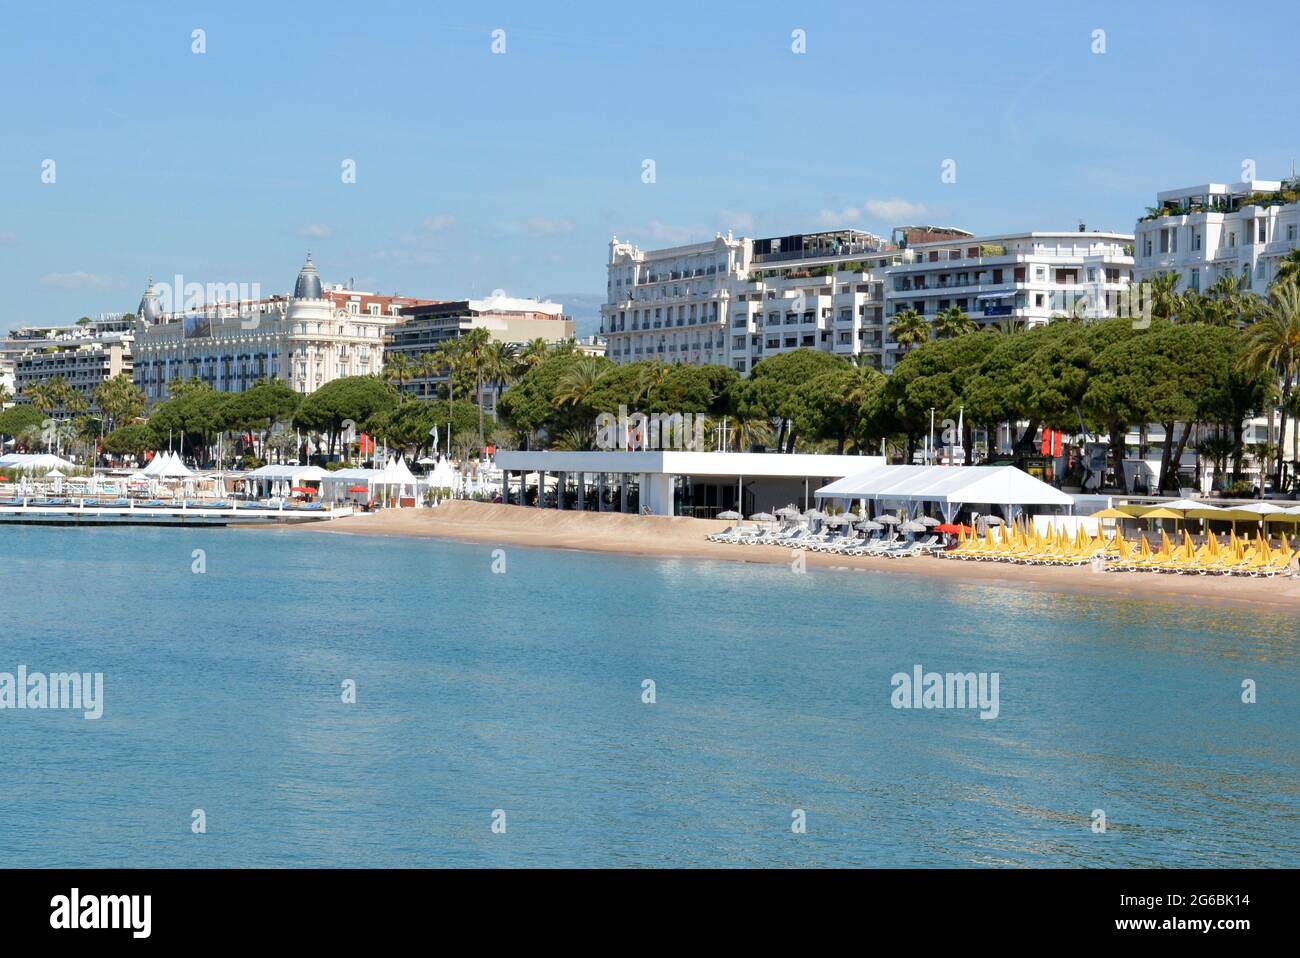 Frankreich, Cannes, Boulevard Croisette,,Luxushotels, Sandstrände mit bunten Sonnenschirmen und Sonnenliegen. Stockfoto